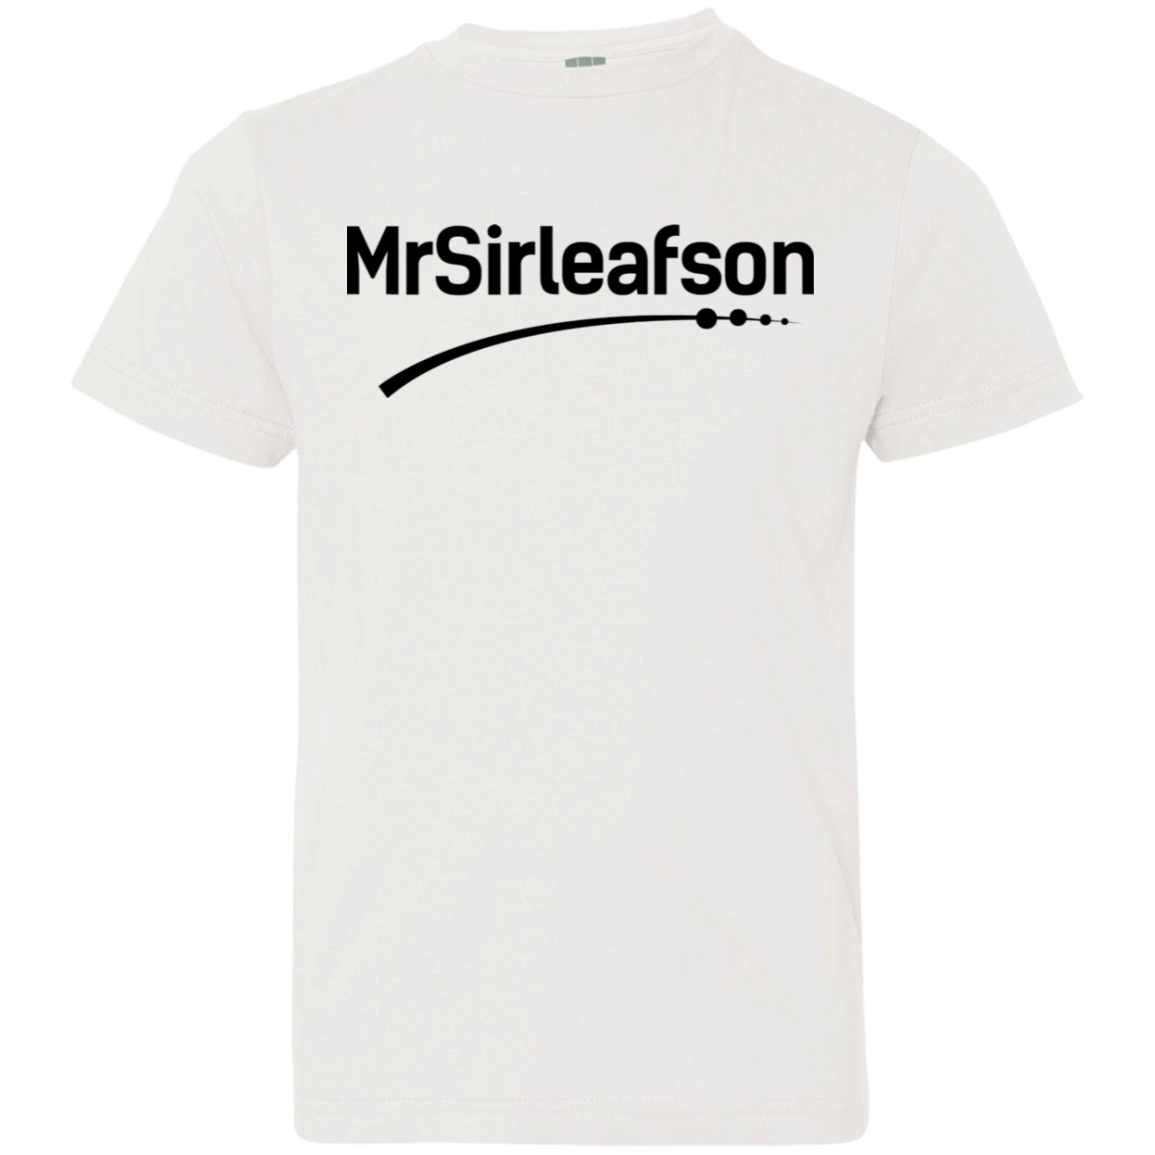 MrSirleafson Youth Jersey T-Shirt